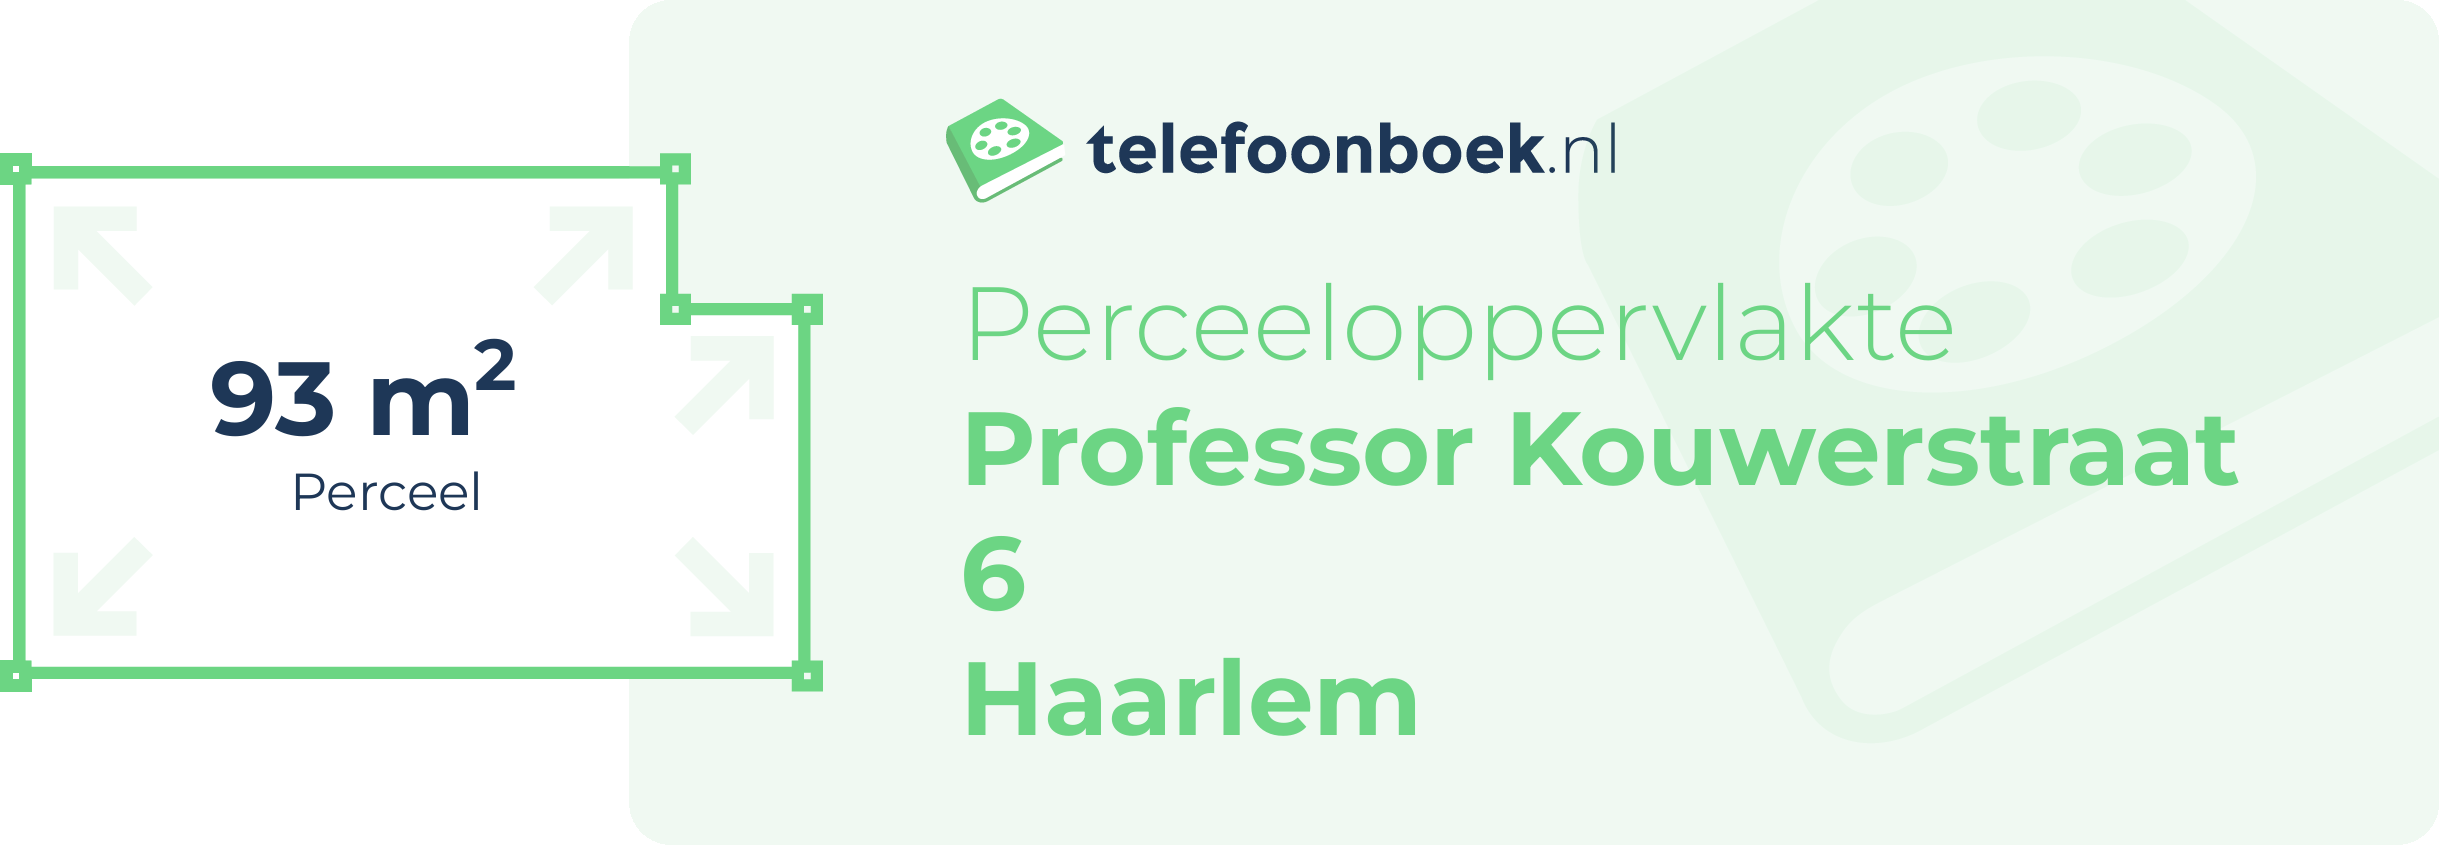 Perceeloppervlakte Professor Kouwerstraat 6 Haarlem